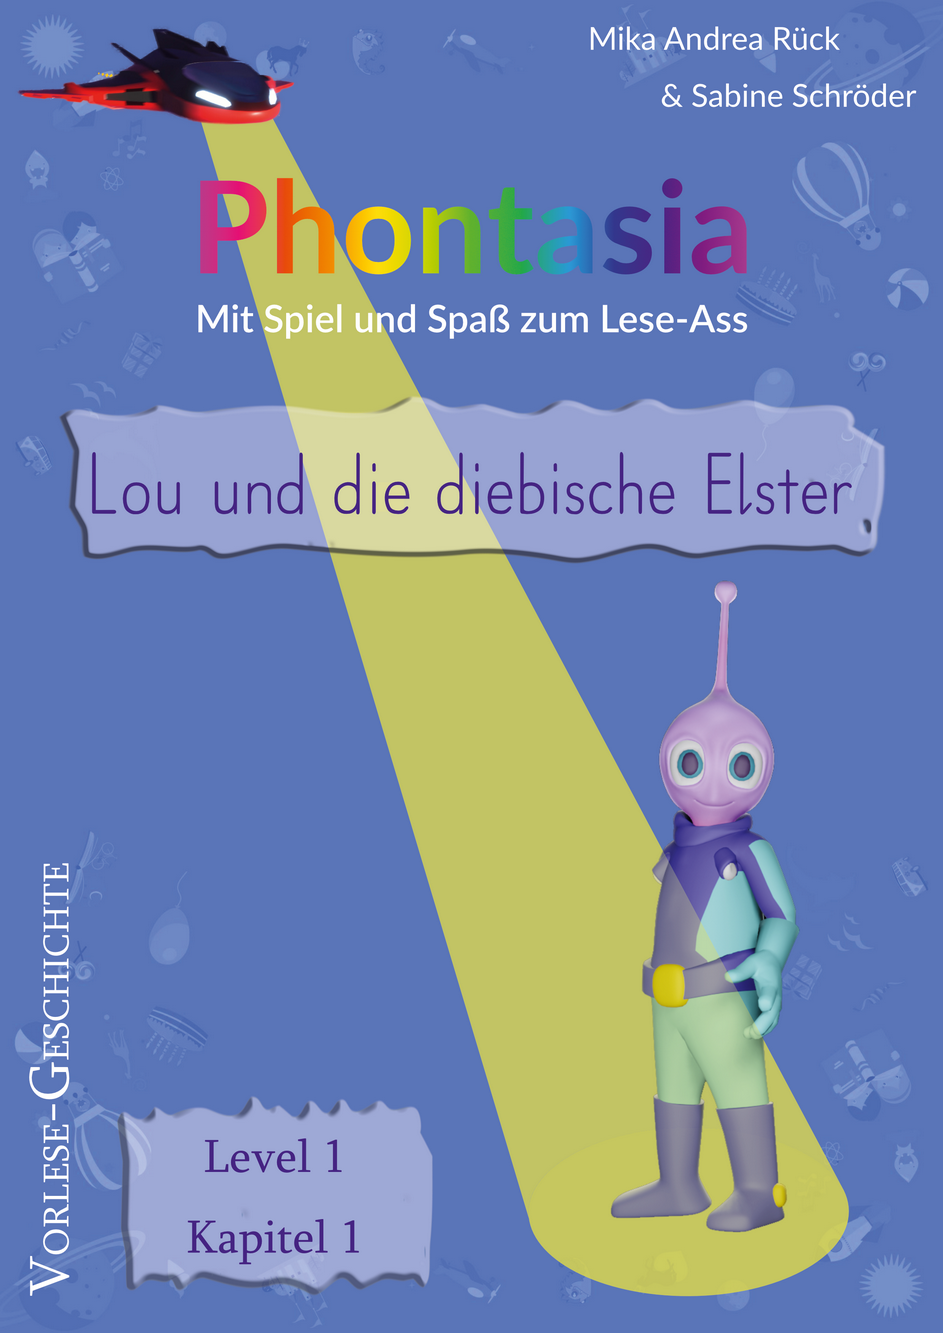 Phontasia: Vorlese-Geschichte „Lou und die diebische Elster„